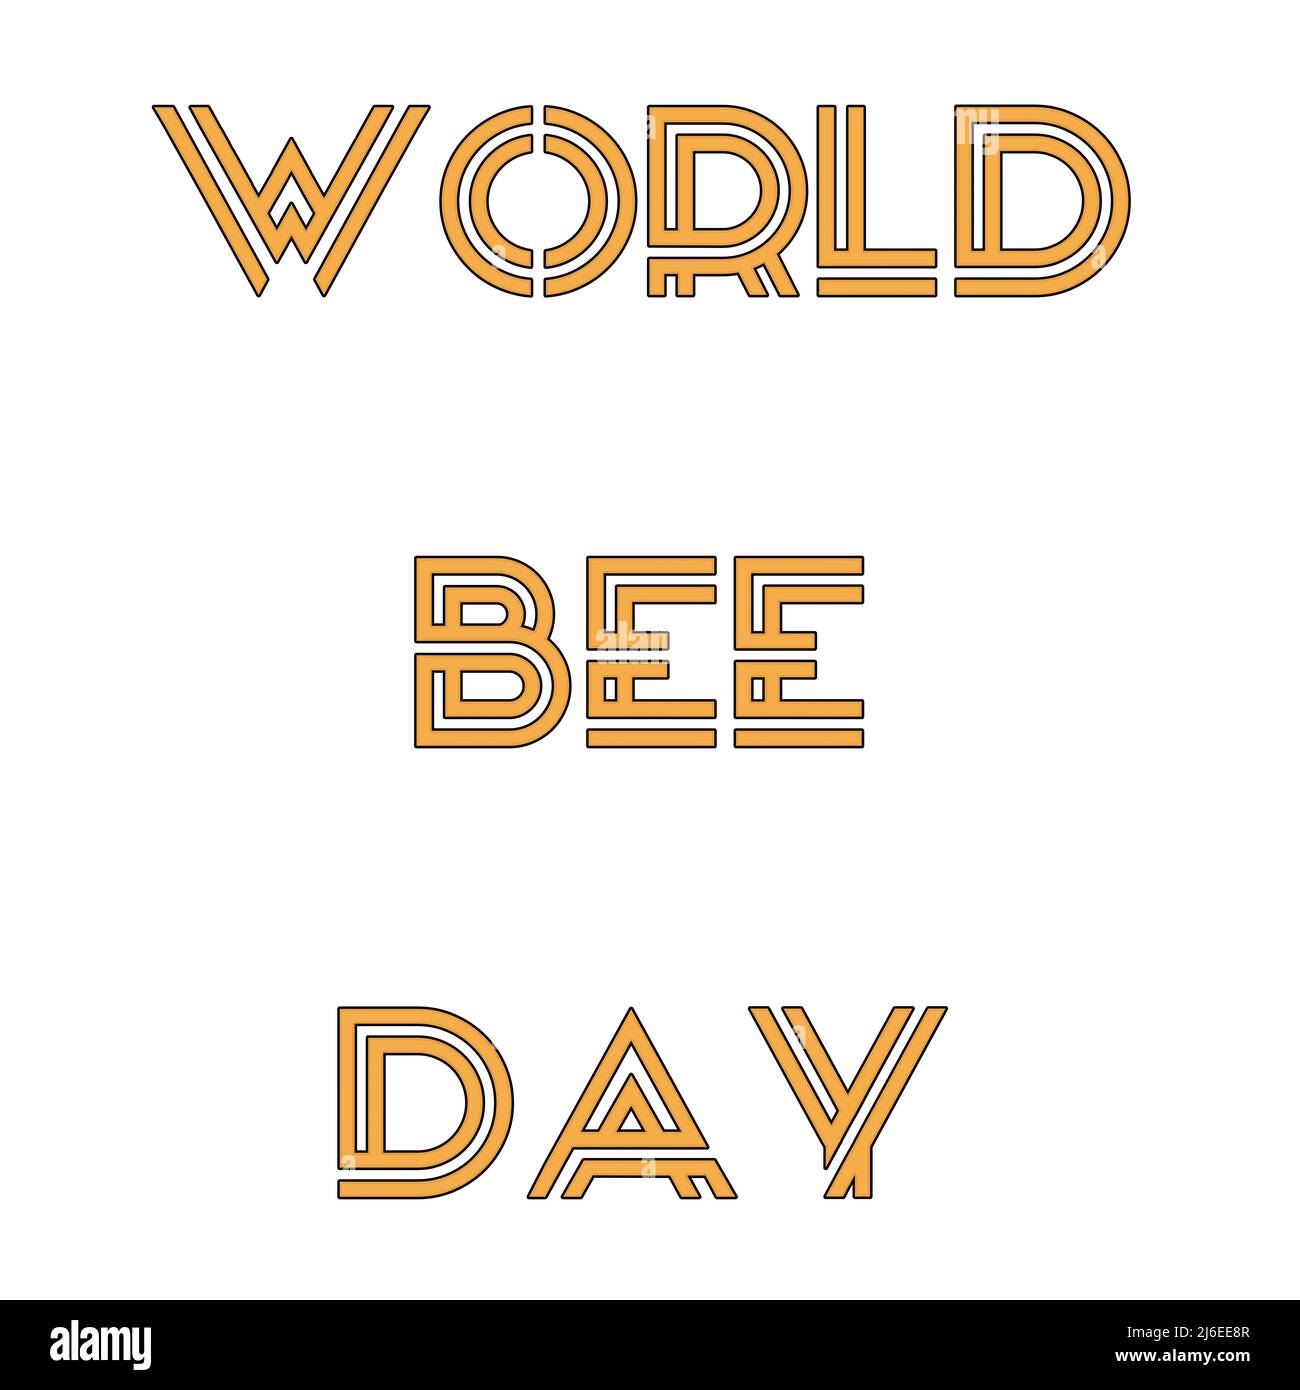 Ein Happy World Bee Day Text mit weißen Hintergrundbildern Stockfoto